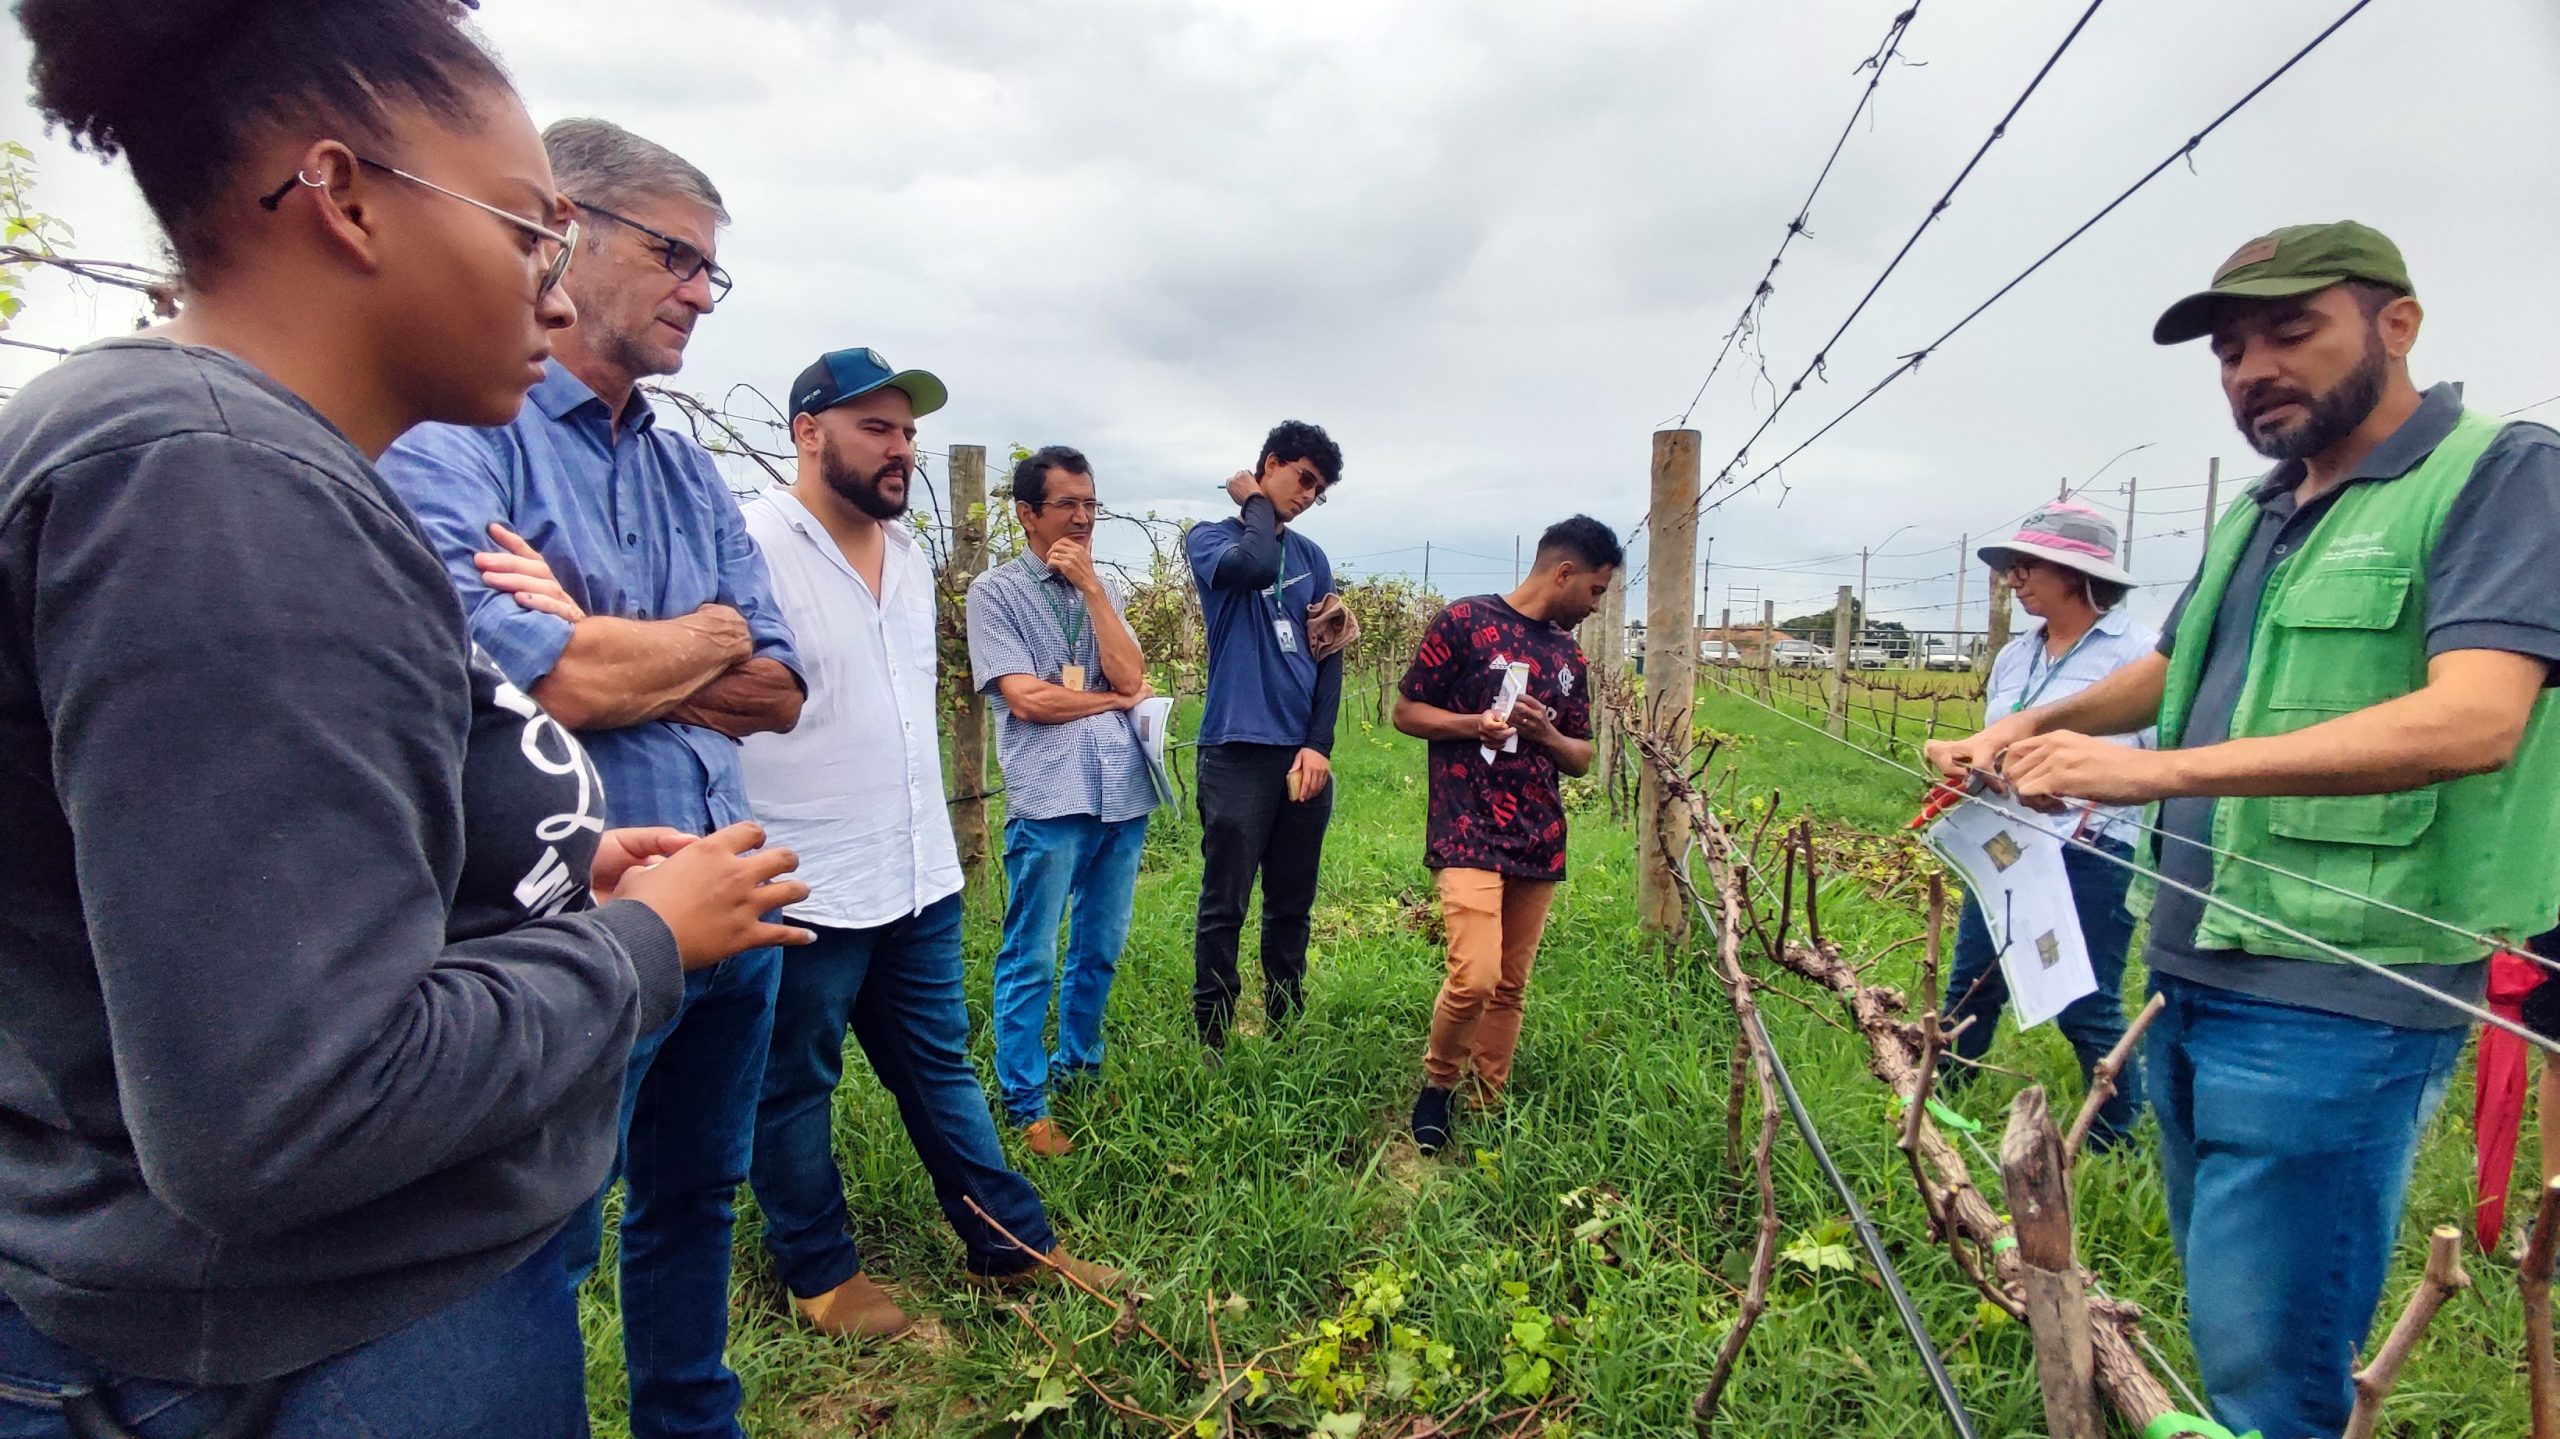 Visita técnica qualifica produtores e trabalhadores rurais no manejo de uva para vinhos finos